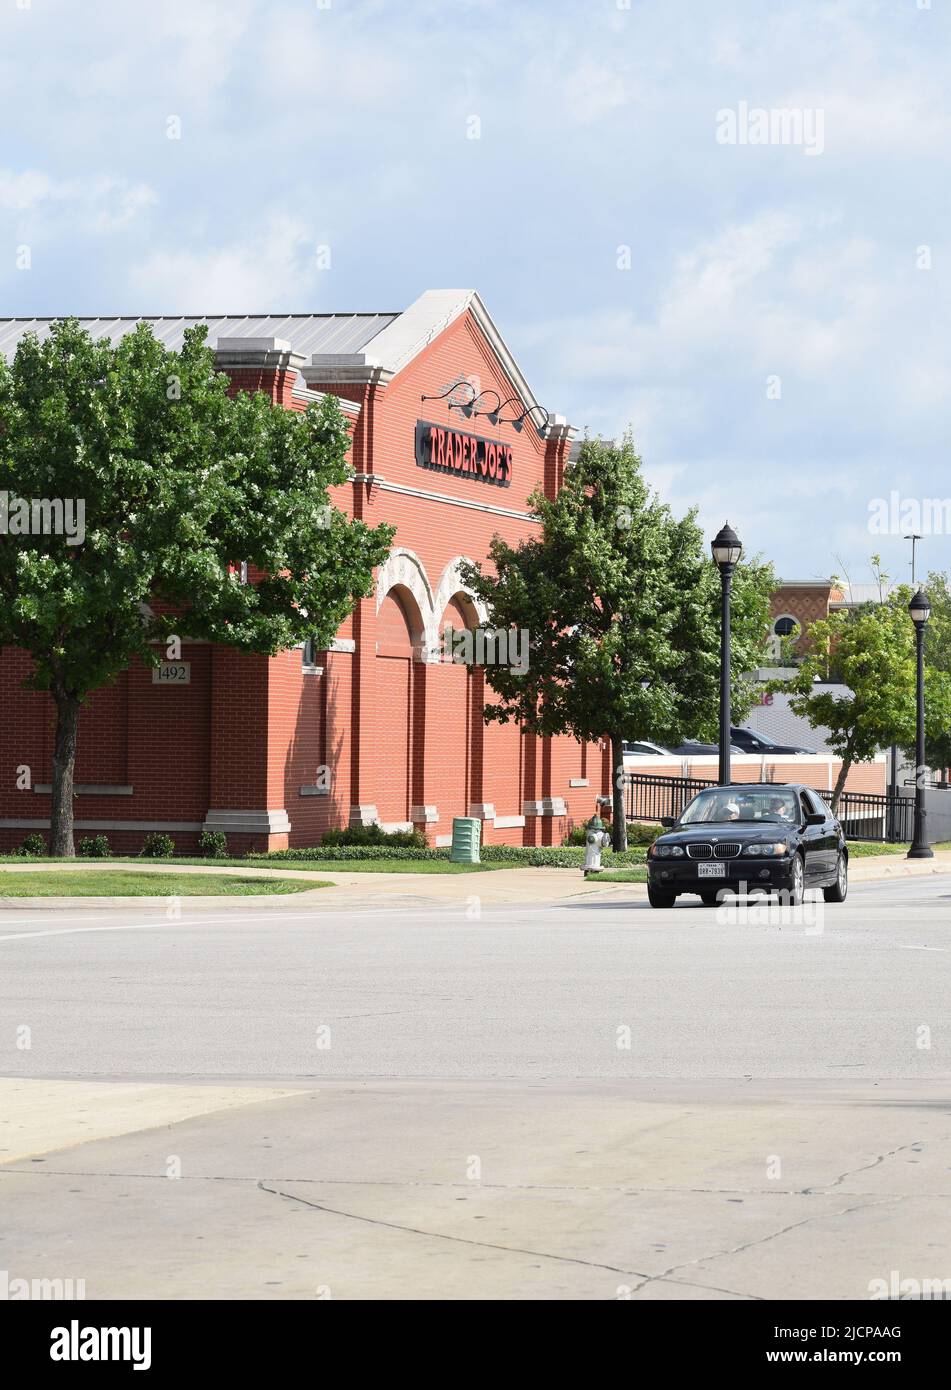 Une BMW noire s'est arrêtée au feu de circulation à côté d'une épicerie Trader Joe à Southlake Texas Banque D'Images